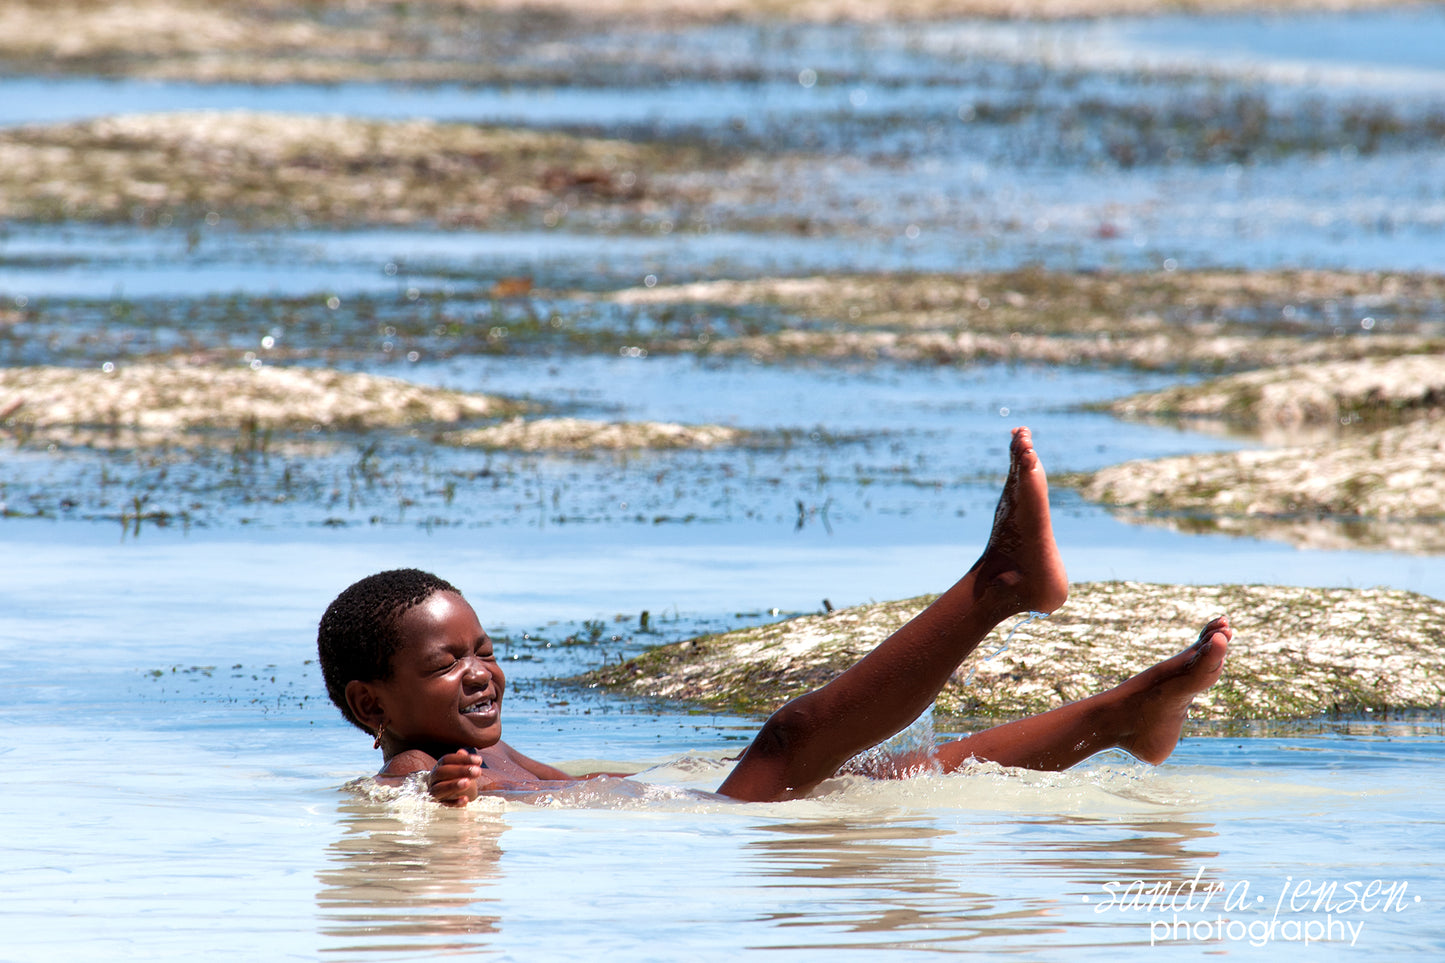 Print - Zanzibar, Tanzania - Child Playing in Water of Matemwe Beach